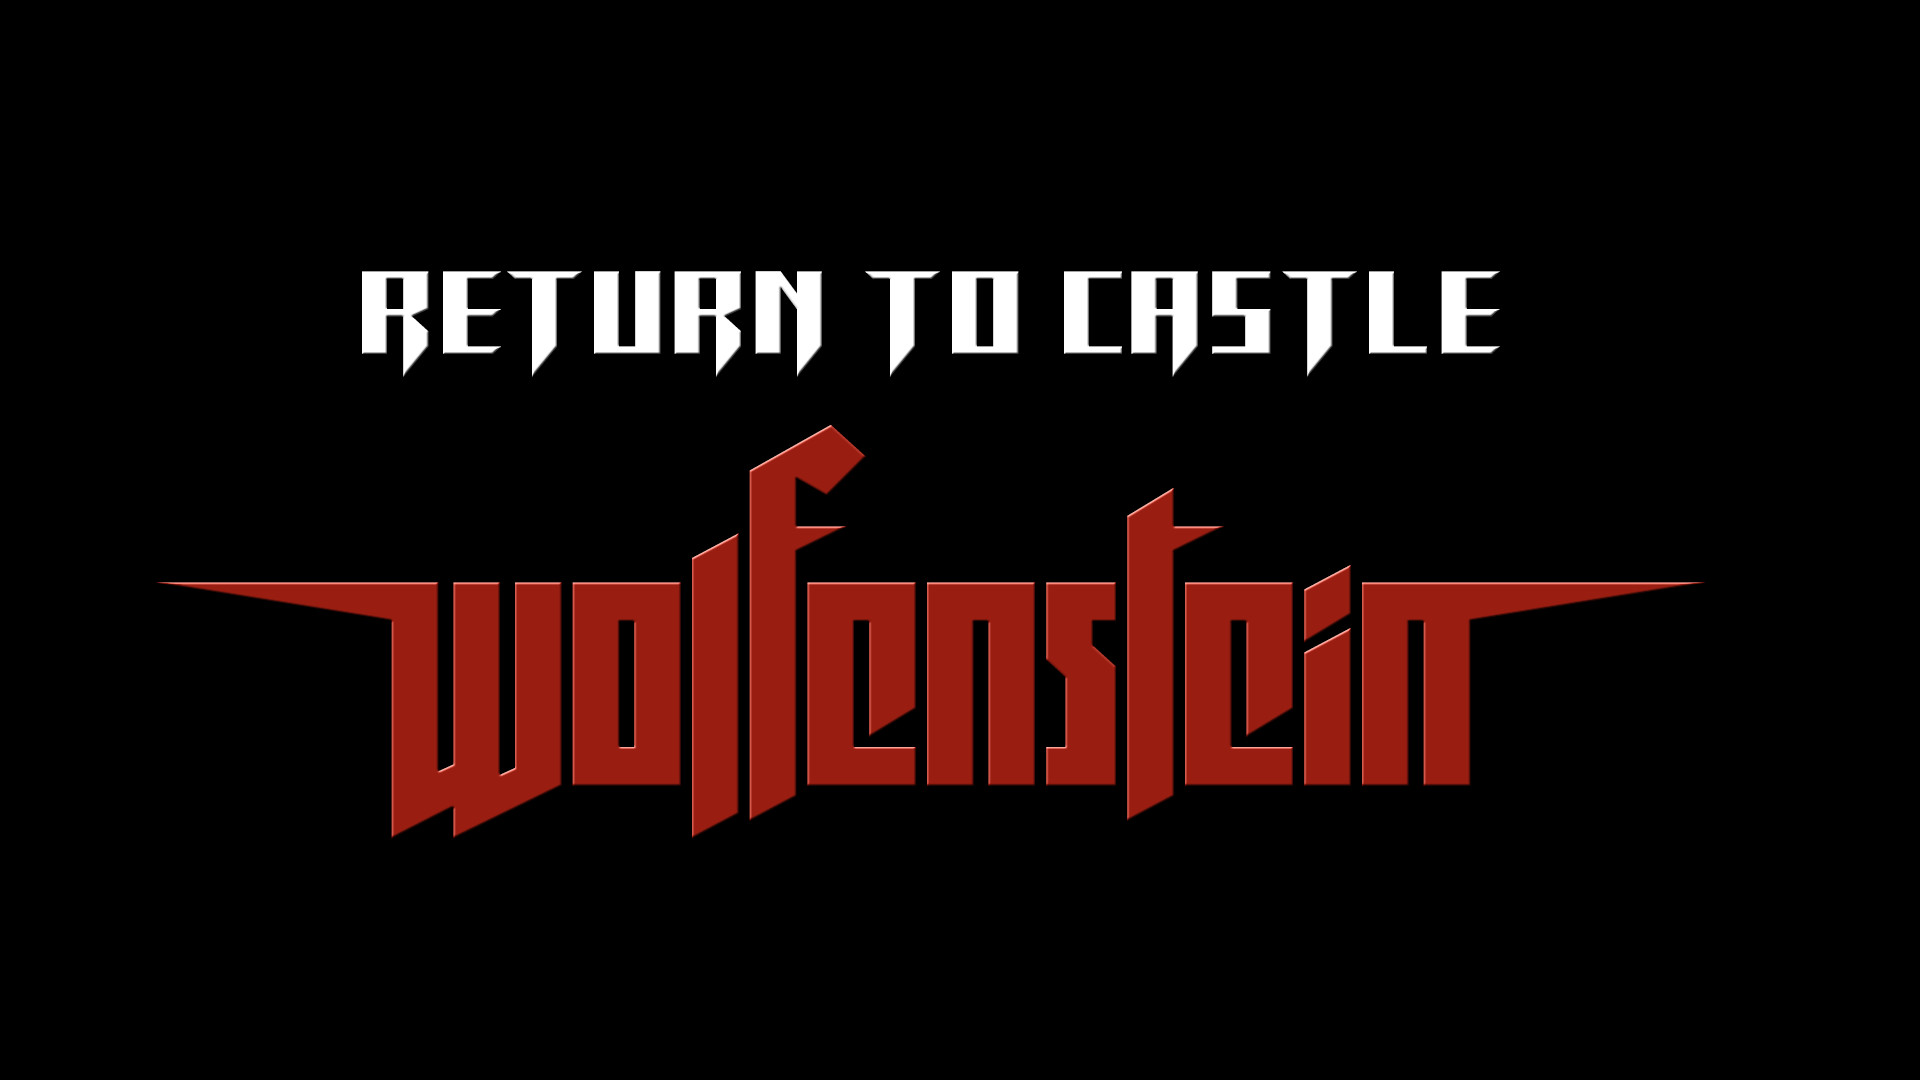 return to castle wolfenstein pc full download